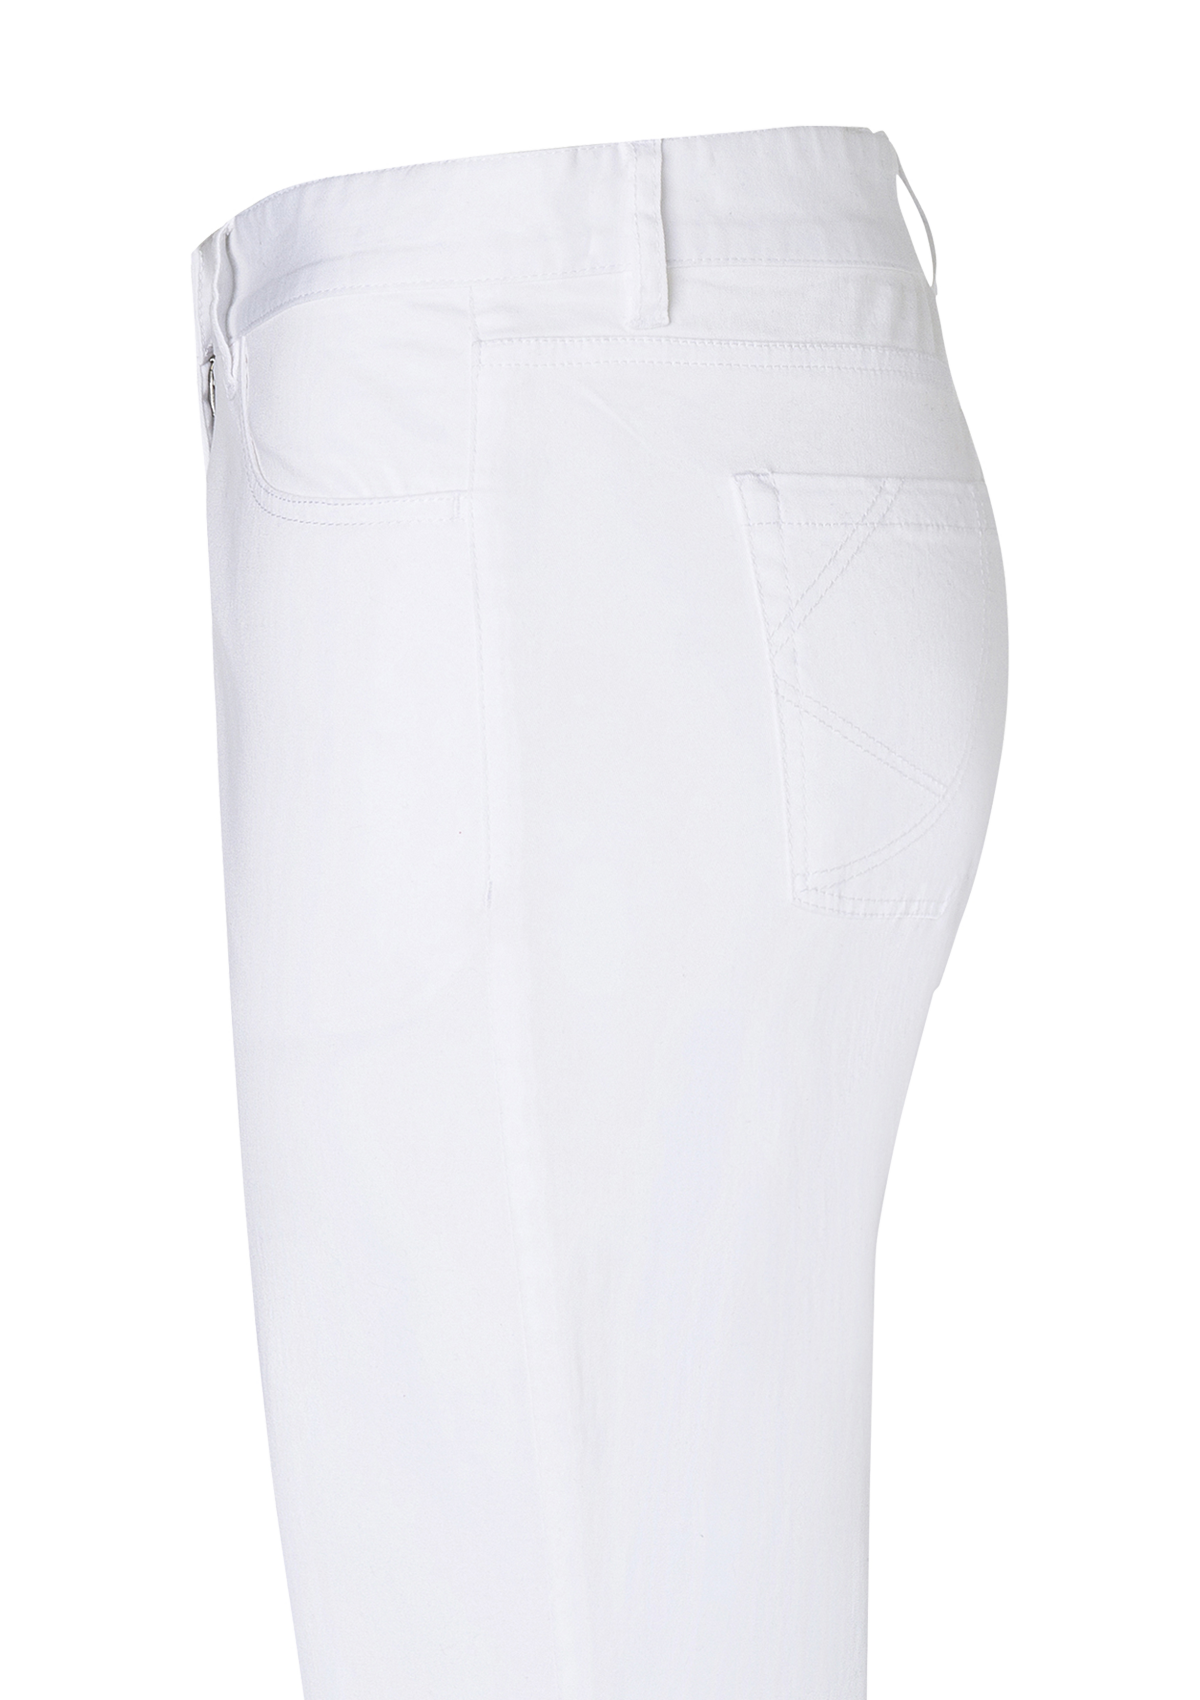 Men's 5-Pocket Trousers - Black or White